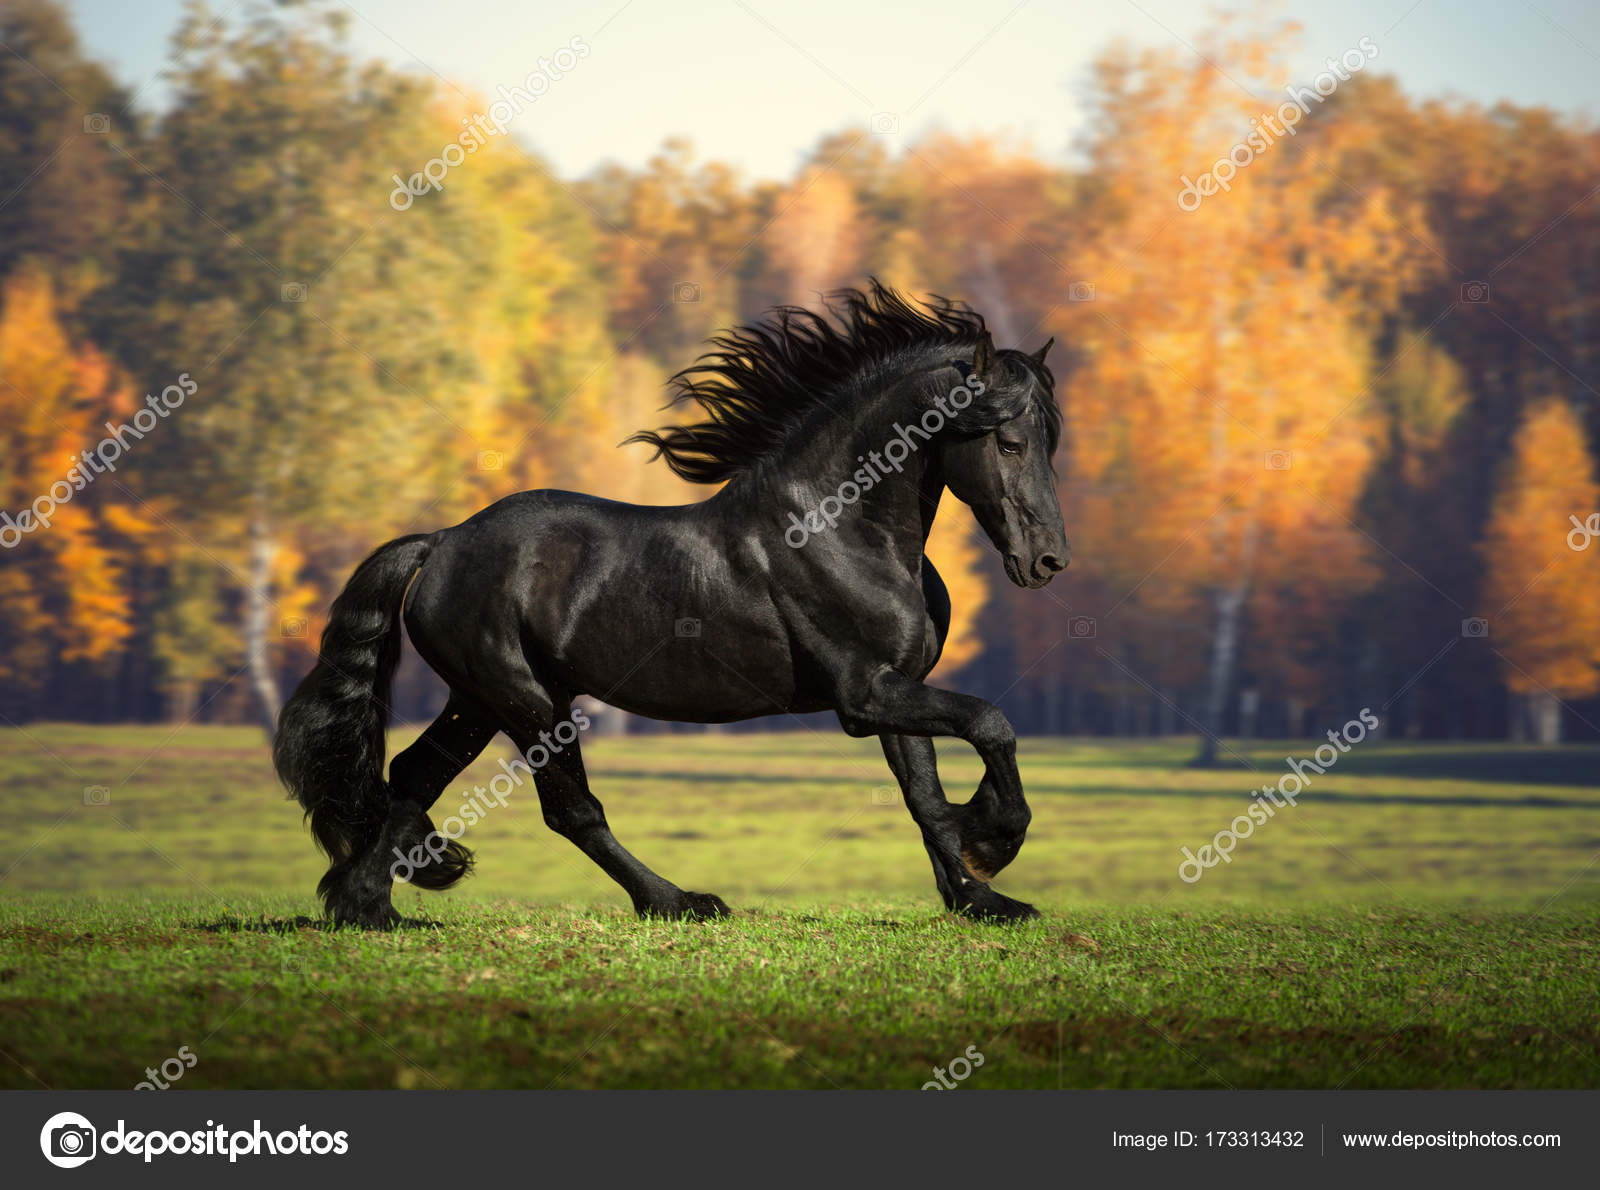 Cảnh ngựa đen chạy trong rừng đen thật hoang sơ, đầy bí ẩn và huyền ảo. Hãy xem hình ảnh liên quan để tận hưởng khung cảnh đẹp và cực kỳ kịch tính này.